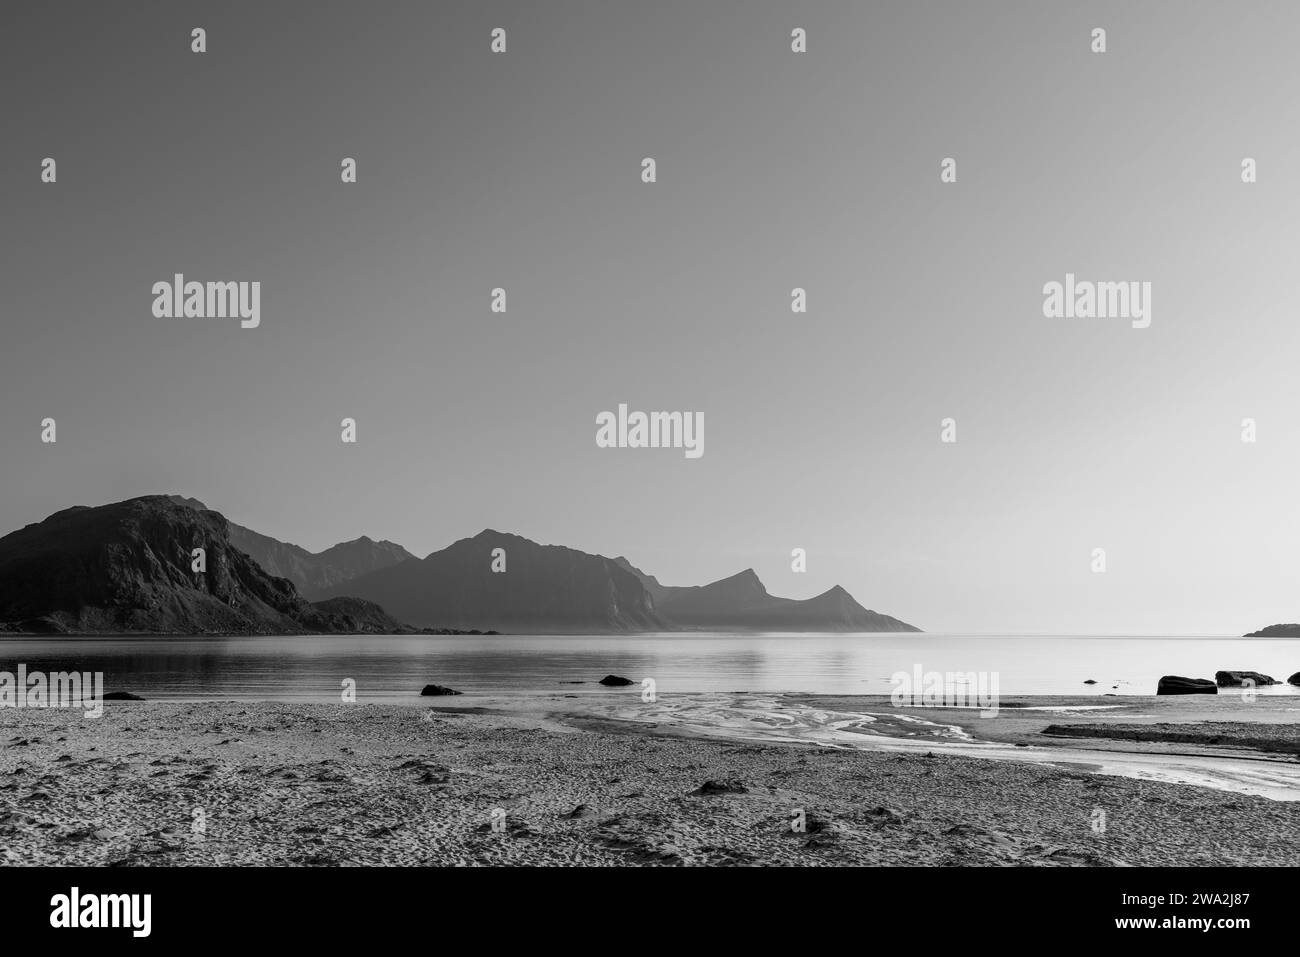 La palette de niveaux de gris de cette image met en évidence le matin tranquille à Haukland Beach, avec des eaux douces qui rencontrent un horizon de montagne en couches. Lofoten Banque D'Images